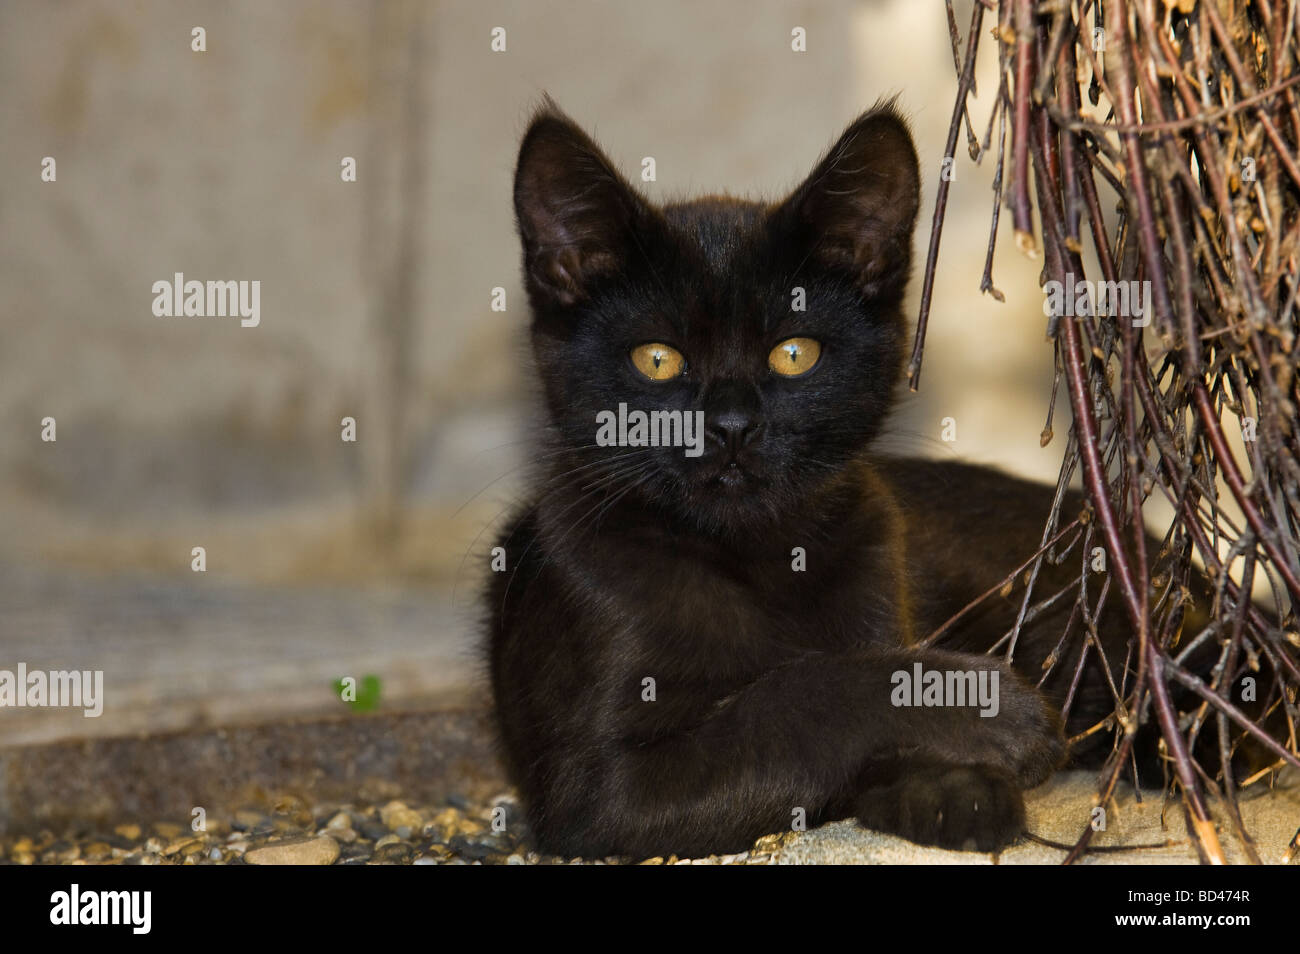 junge schwarze Katze mit geheimnisvollen gelben Augen Kätzchen im freien verlegen Verlegung Aussehen suchen Tiere Katze Kätzchen Abend Licht Cateye Auge g Stockfoto